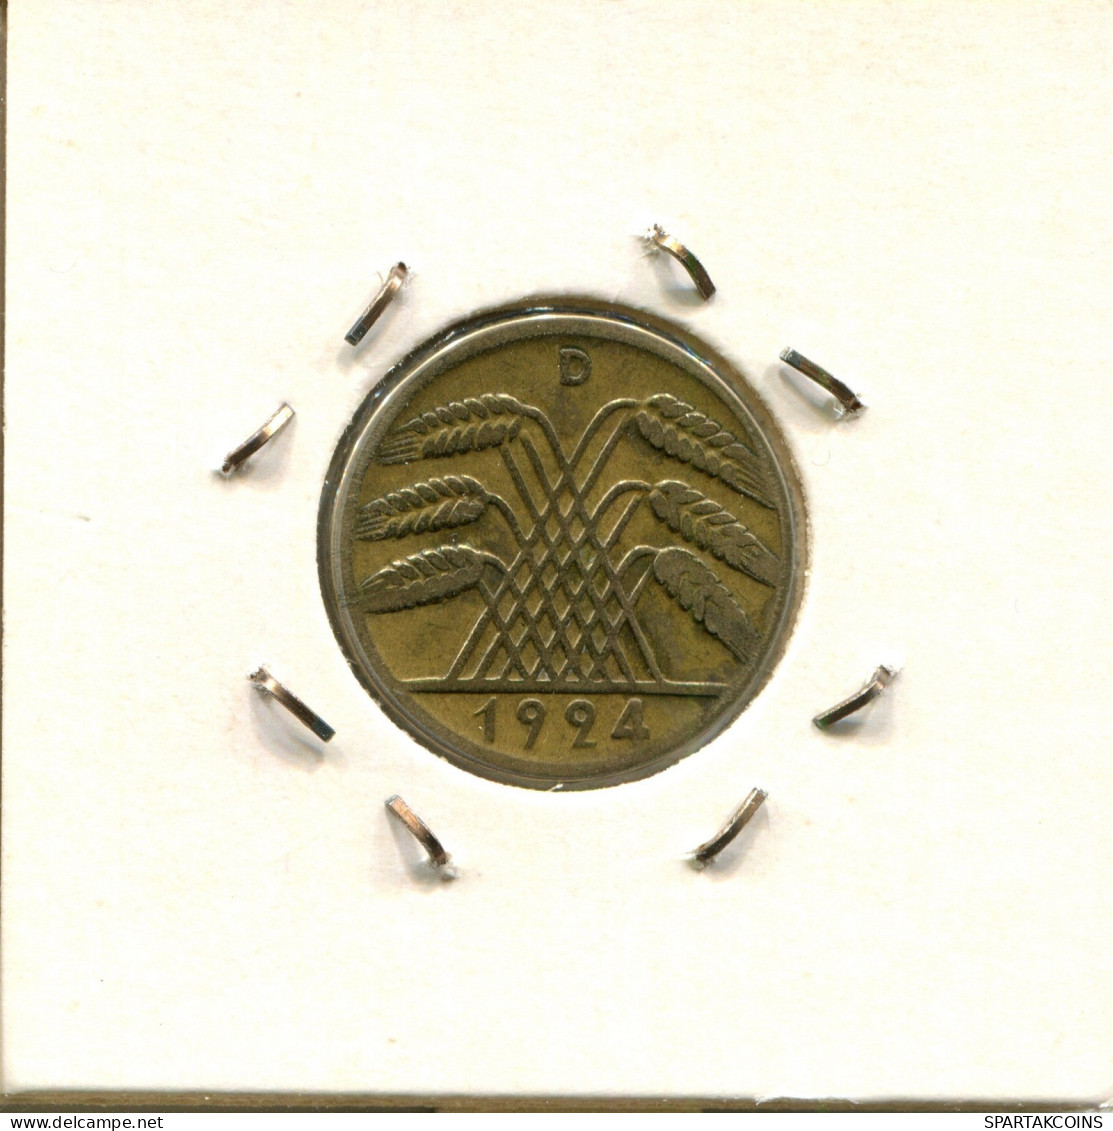 10 REICHSPFENNIG 1924 D GERMANY Coin #DA497.2.U.A - 10 Renten- & 10 Reichspfennig